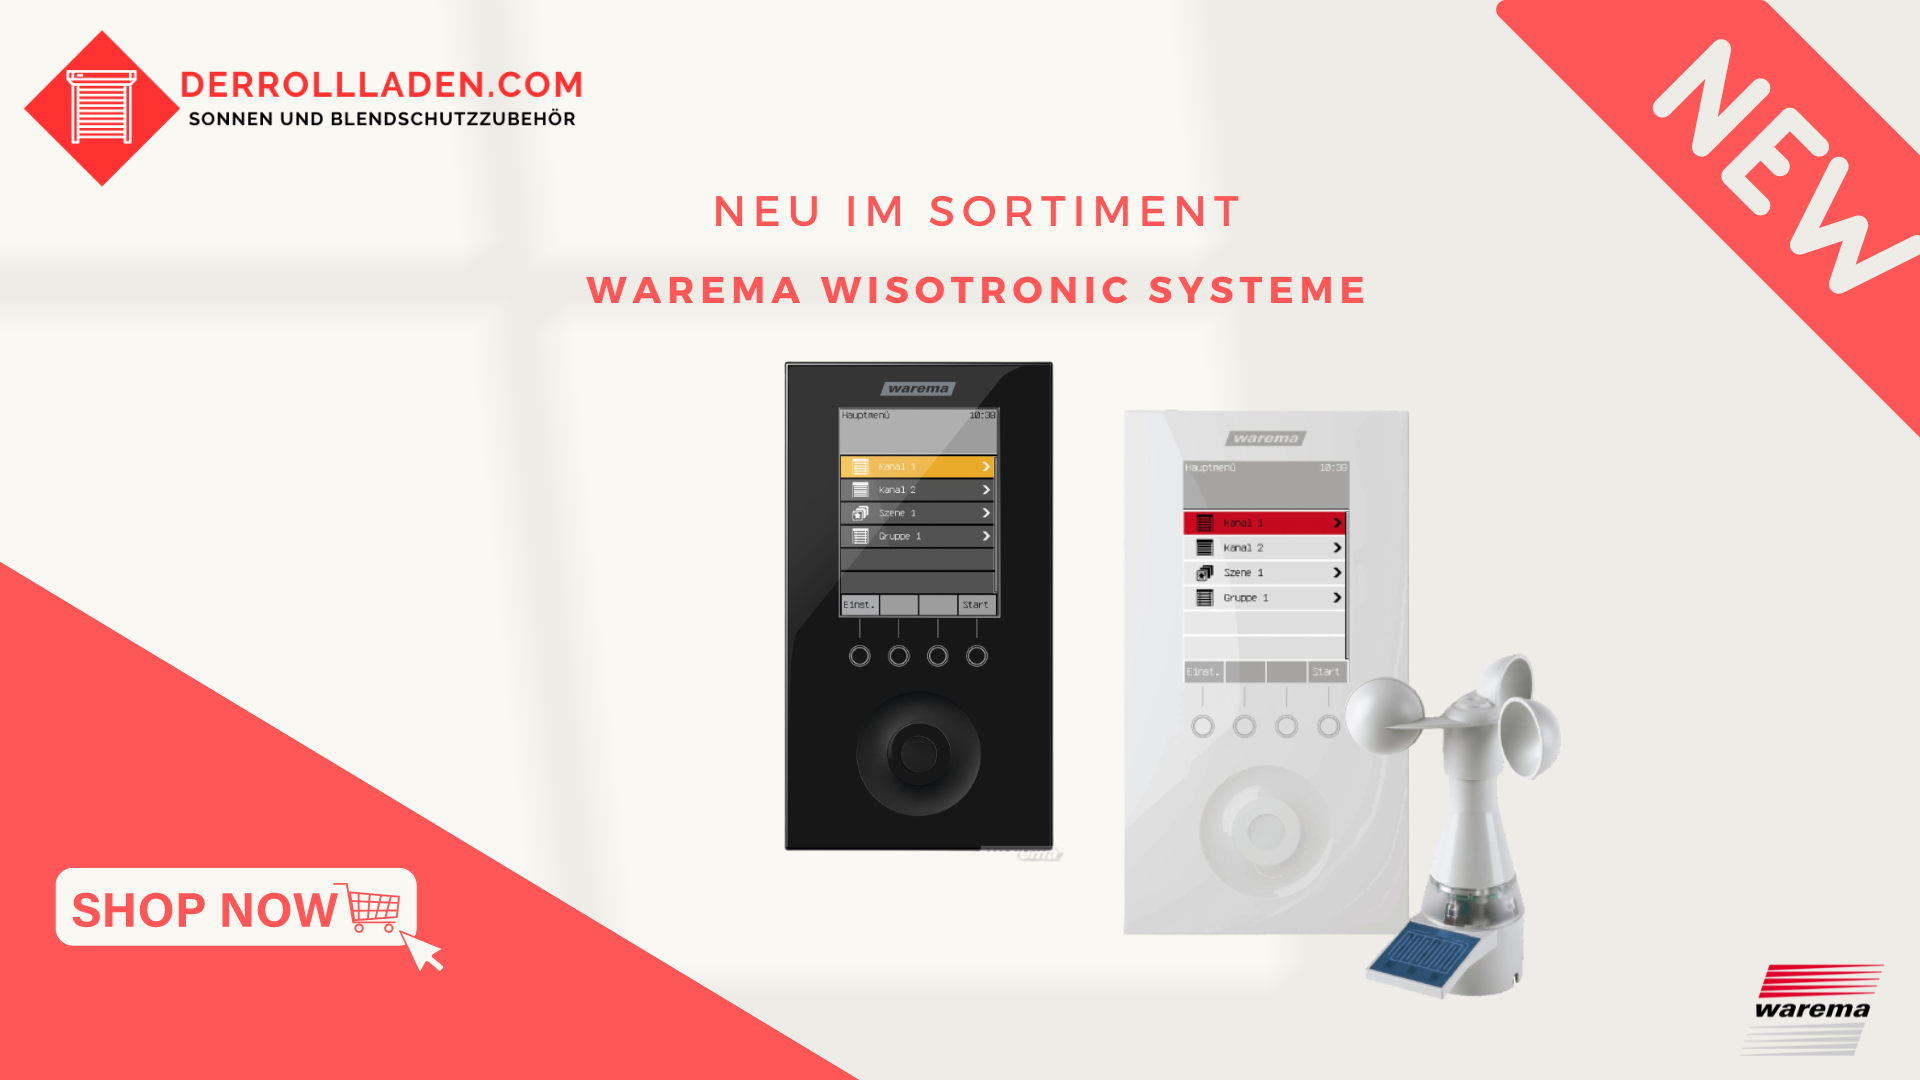 Smarte Wohnlösungen: WAREMA Wisotronic bringt Komfort und Effizienz in Ihr Zuhause.